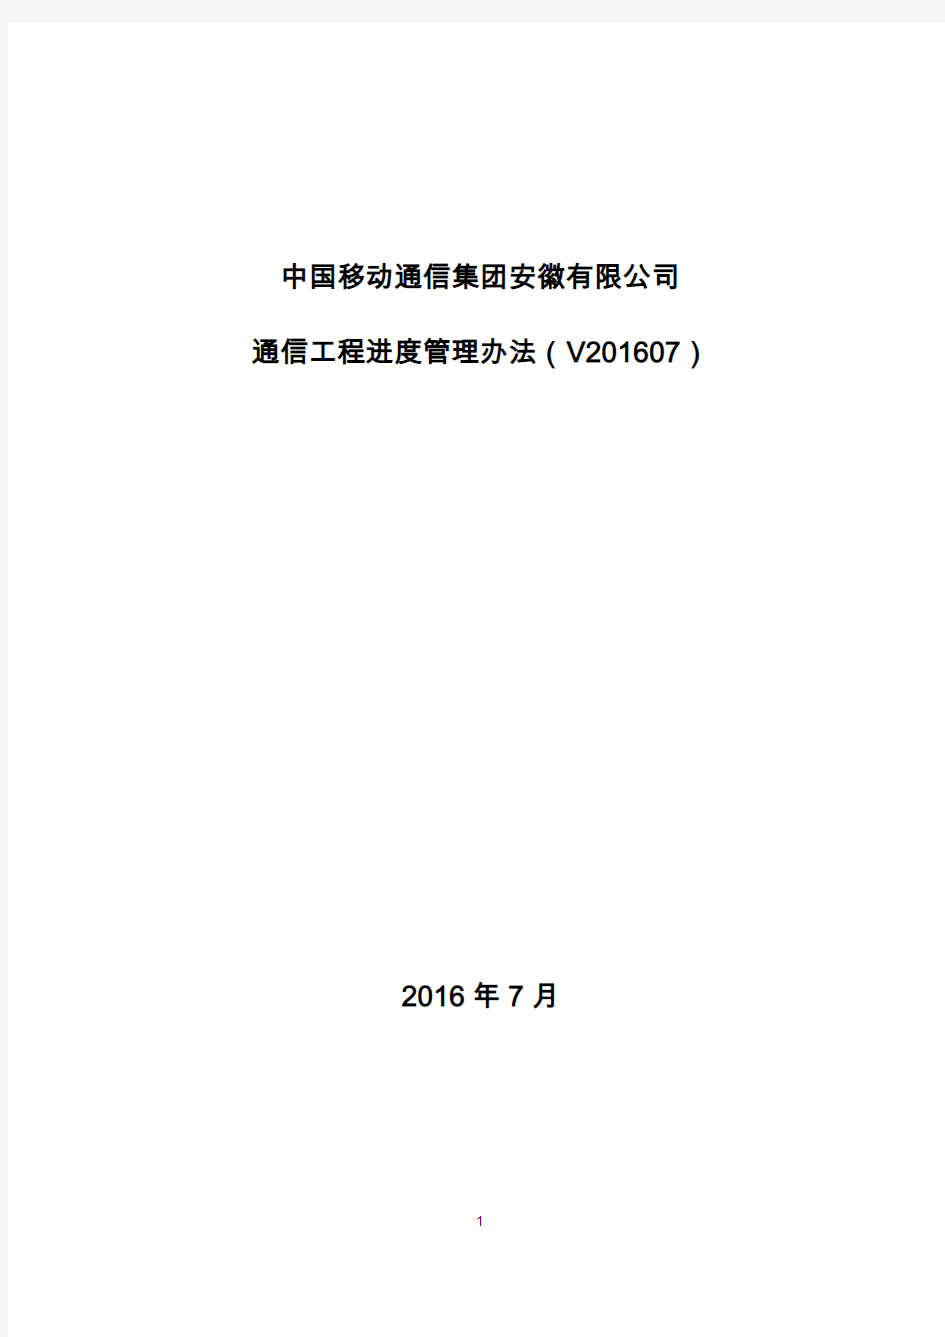 中国移动通信集团安徽有限公司通信工程进度管理办法(V201607)